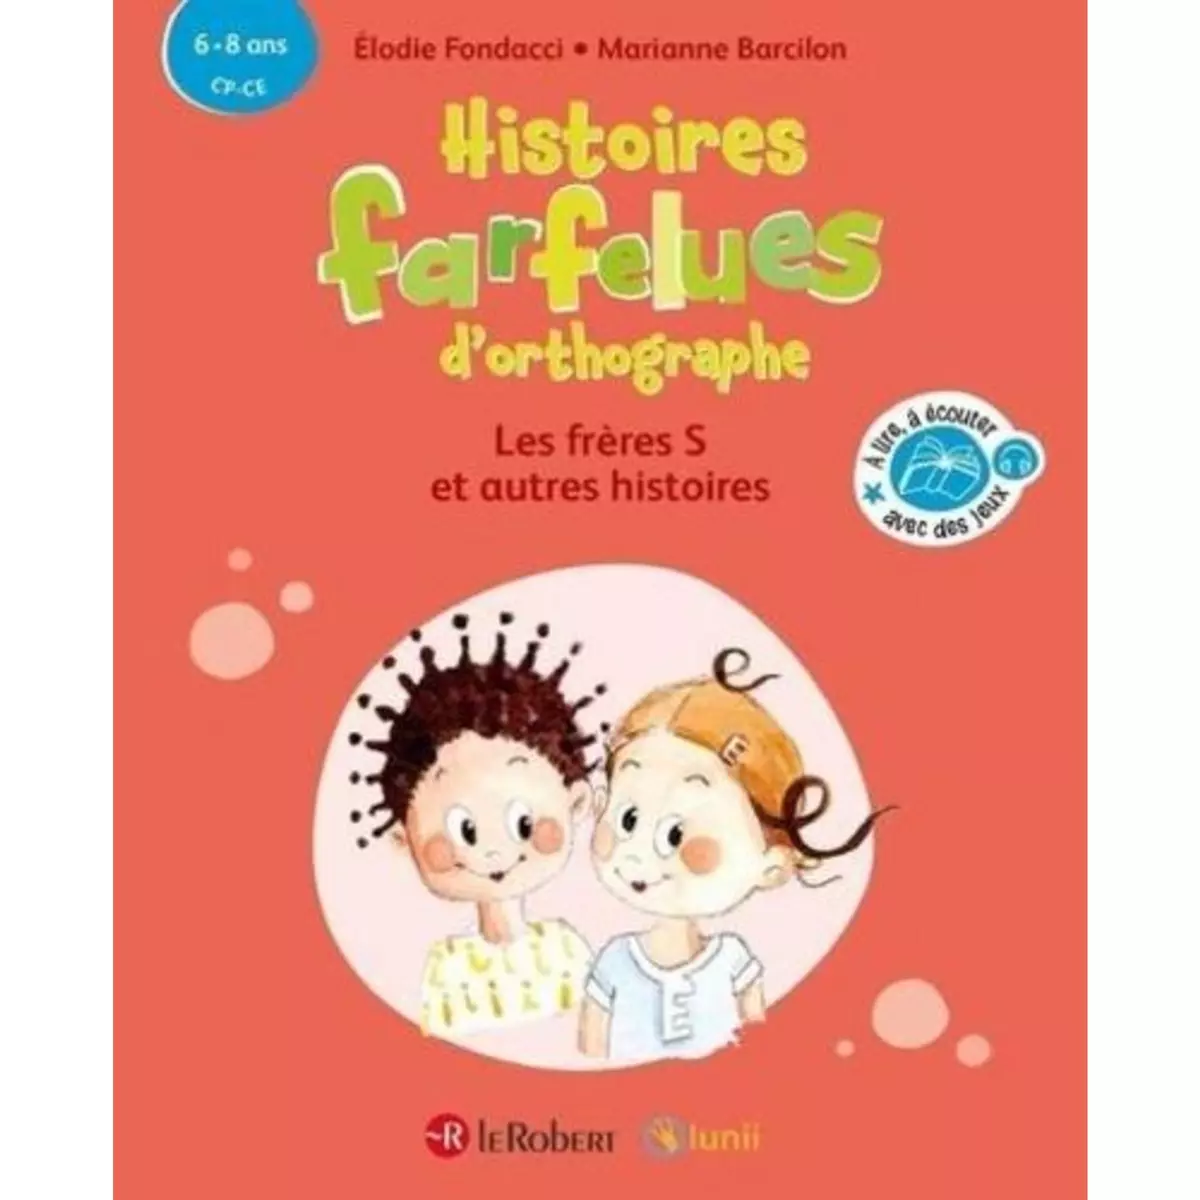  HISTOIRES FARFELUES D'ORTHOGRAPHE - LES FRERES S ET AUTRES HISTOIRES. CP-CE, Fondacci Elodie